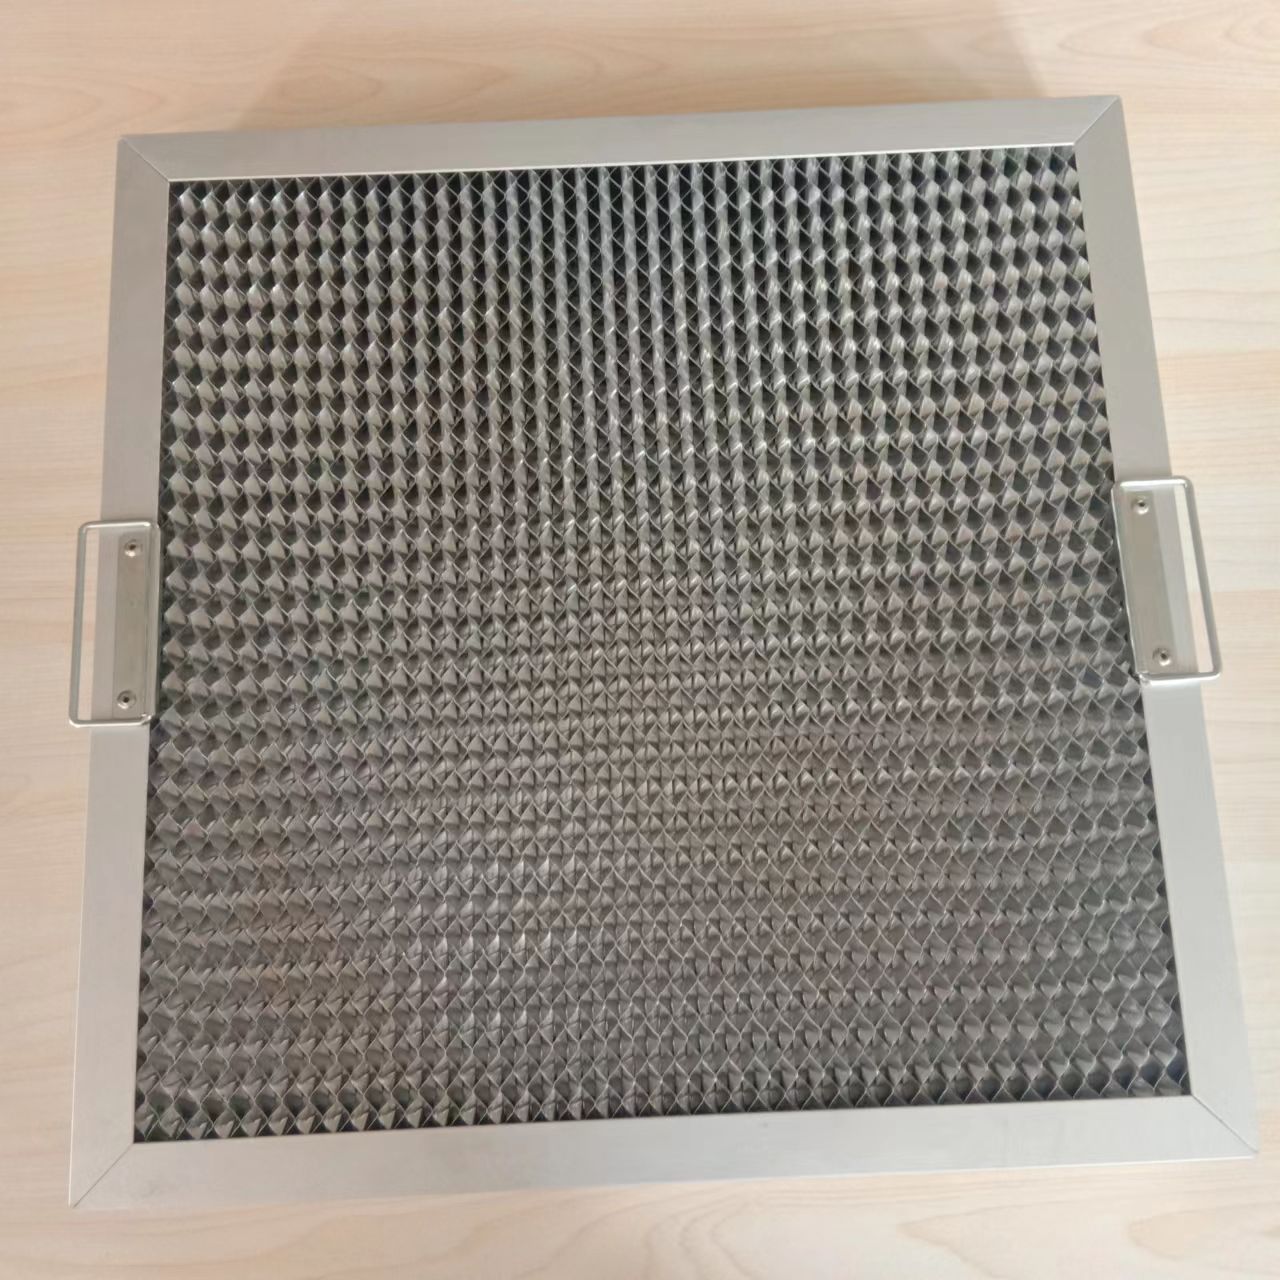 Maščobni filter v obliki satja iz aluminija